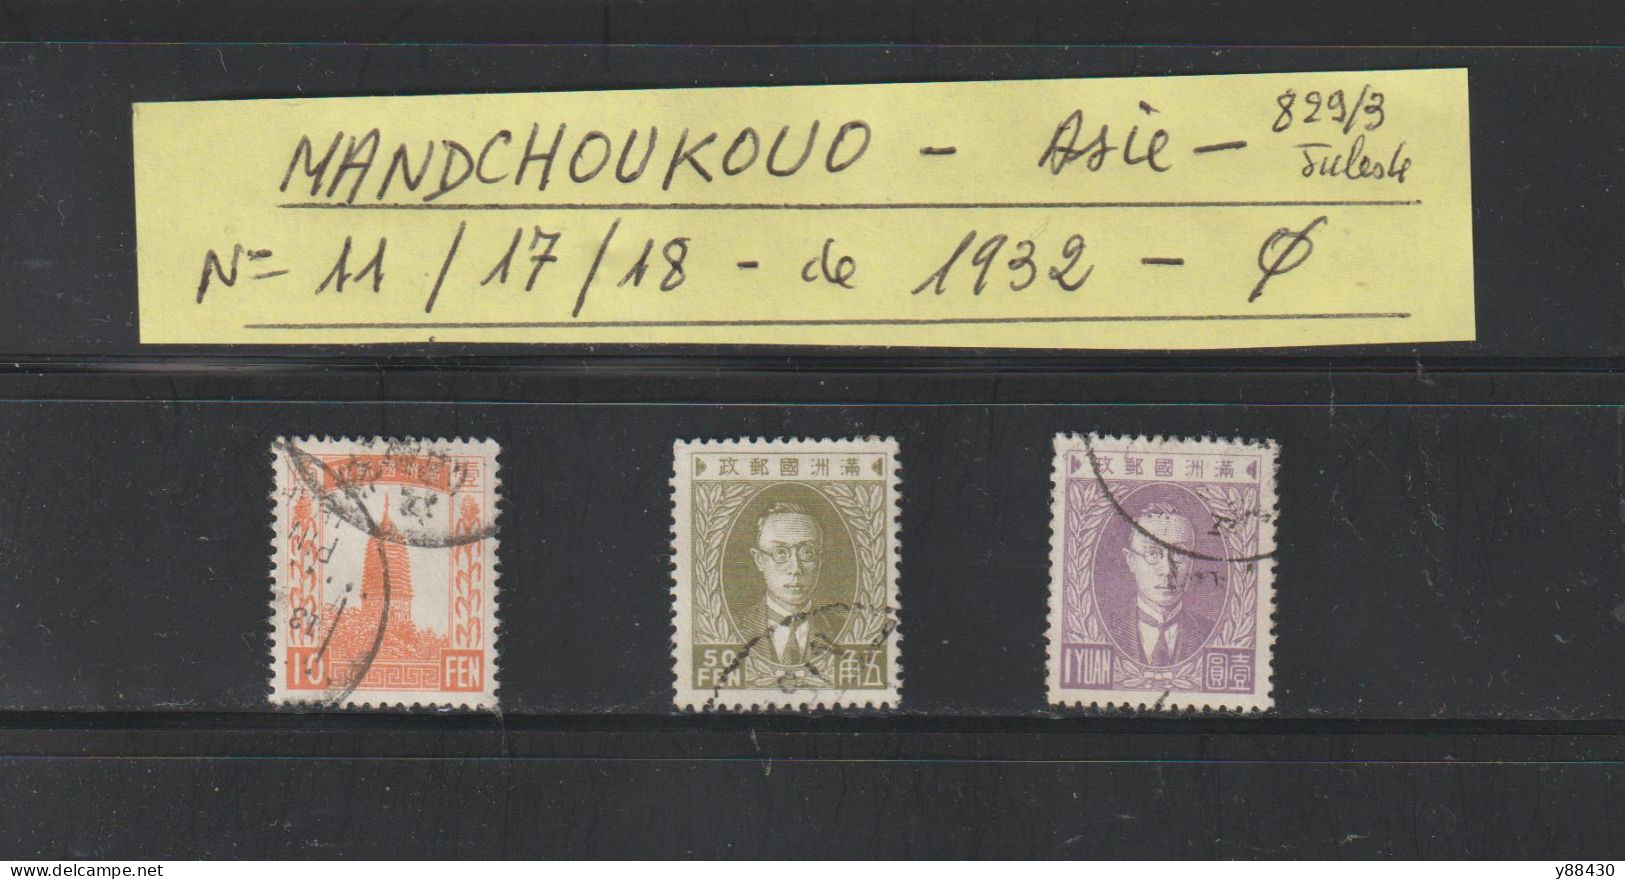 MANDCHOUKOUO - ASIE - Occupation JAPONAISE - N° 11 / 17 / 18  De 1932 - 3 Timbres Oblitérés  - 2 Scan - 1932-45 Mandchourie (Mandchoukouo)